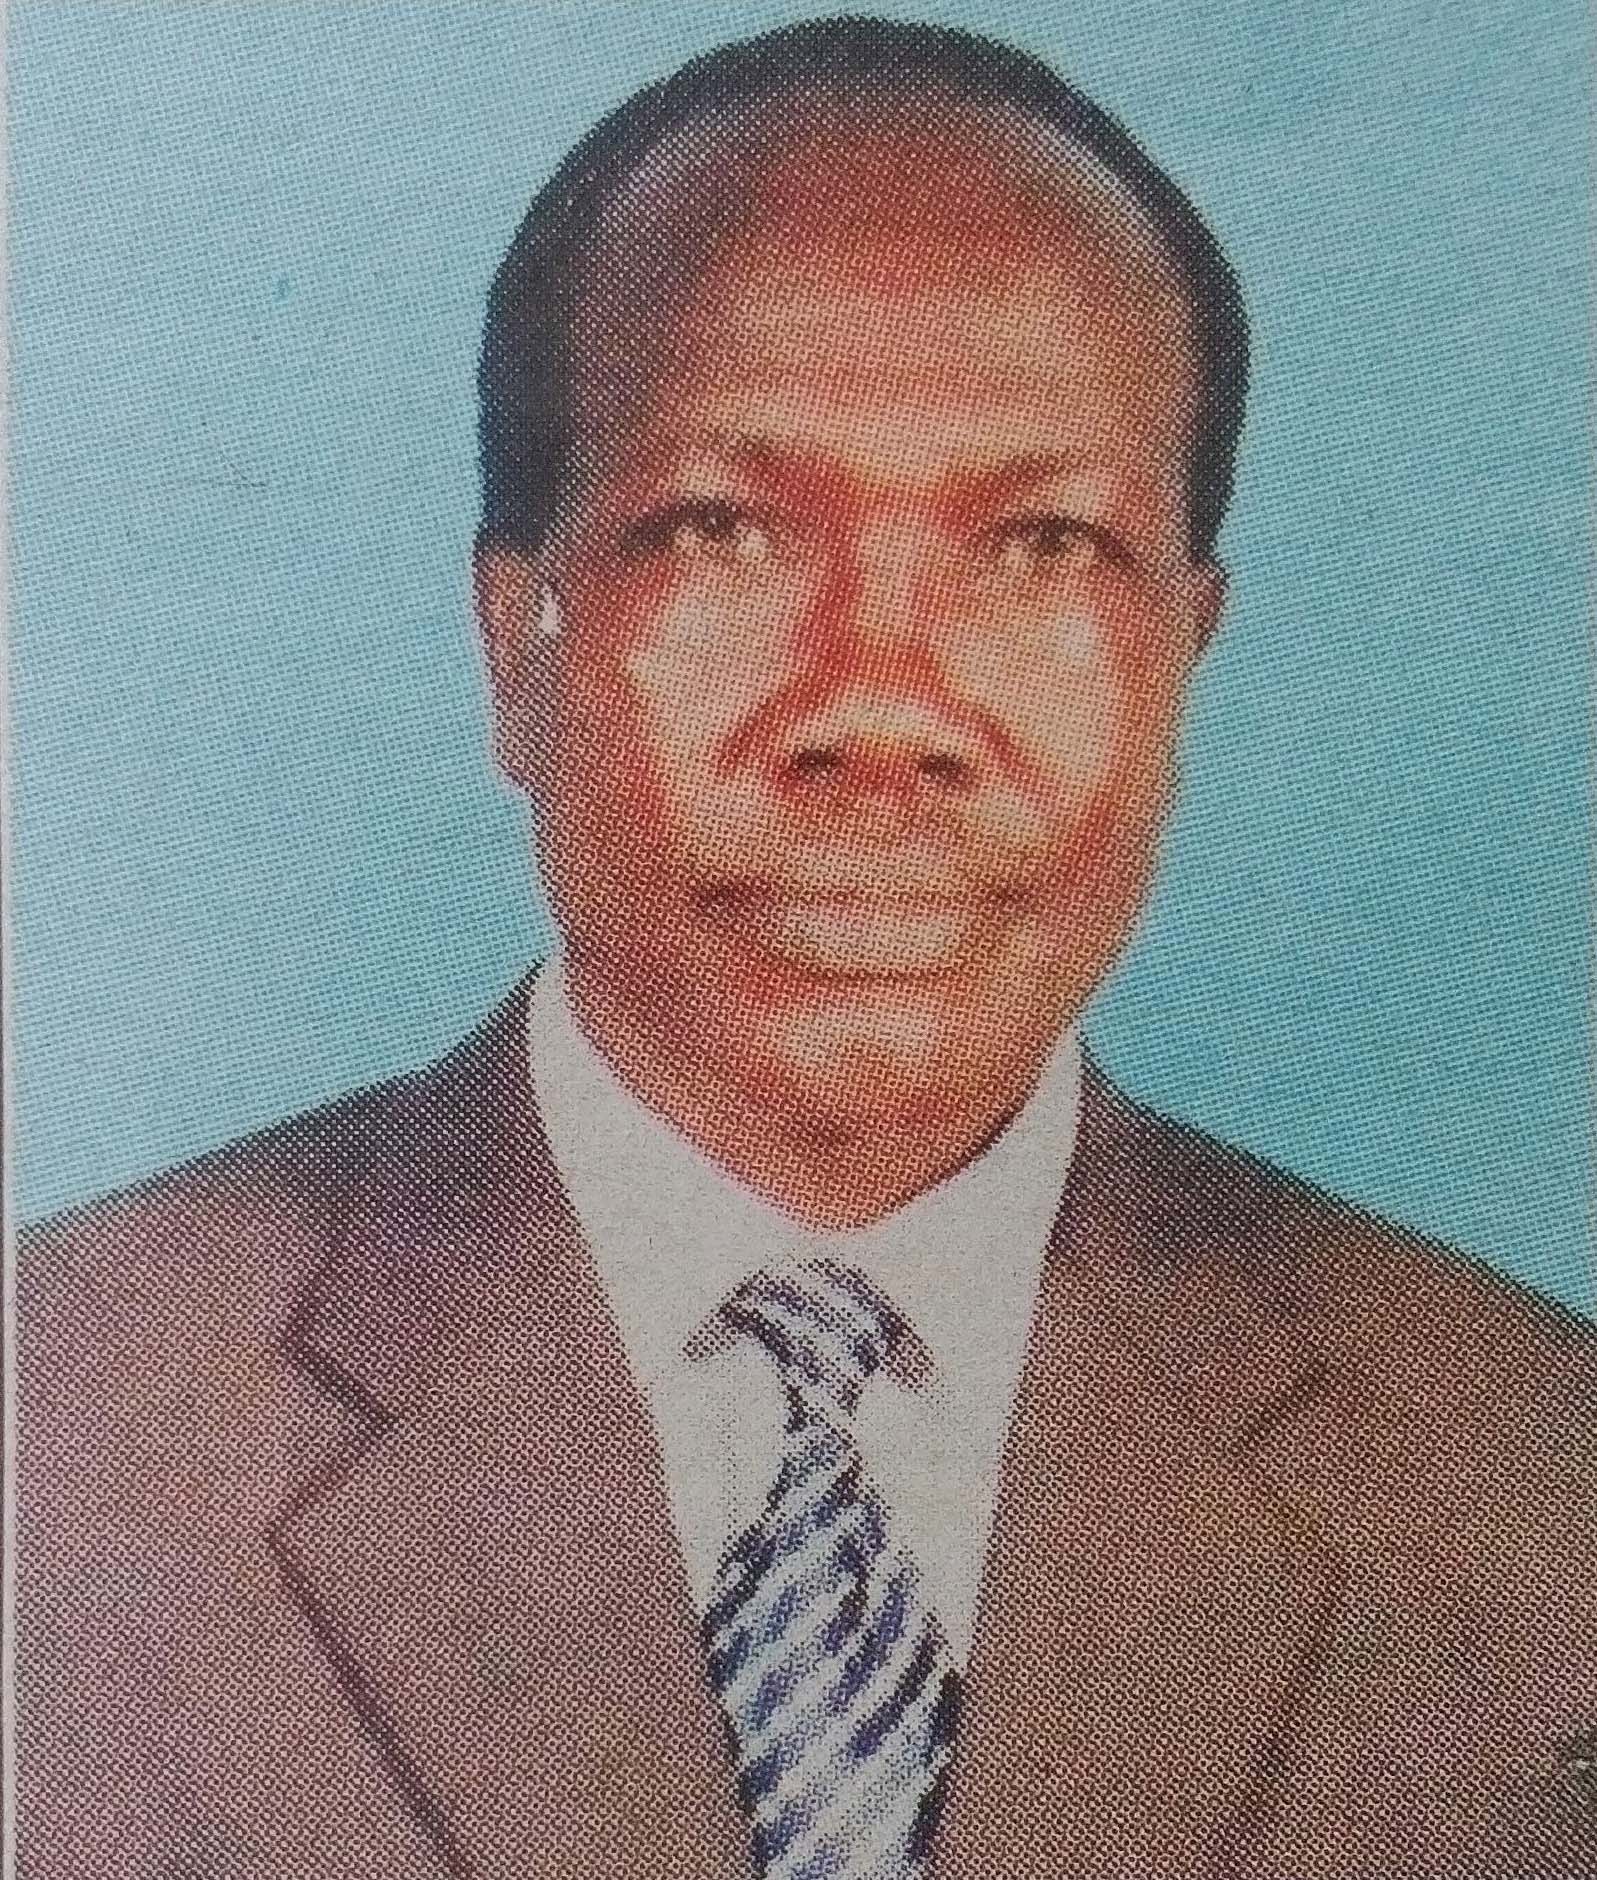 Obituary Image of Festus Hezron Nyamberi Nyaanga